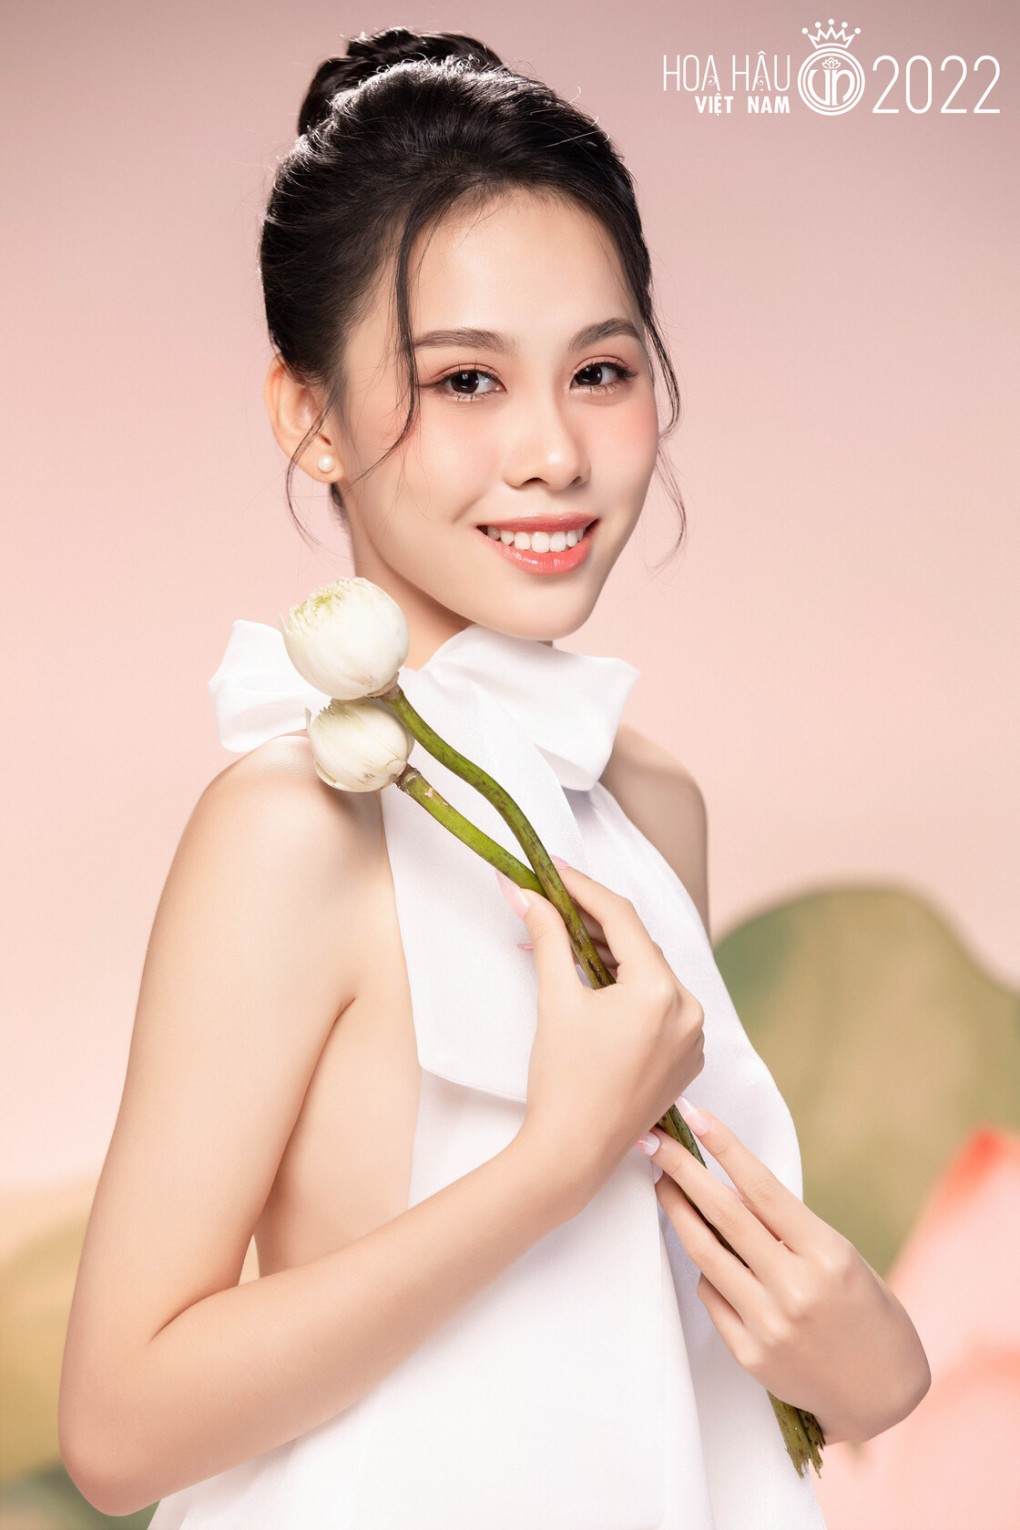 Ai sẽ đăng quang Hoa hậu Việt Nam 2022?